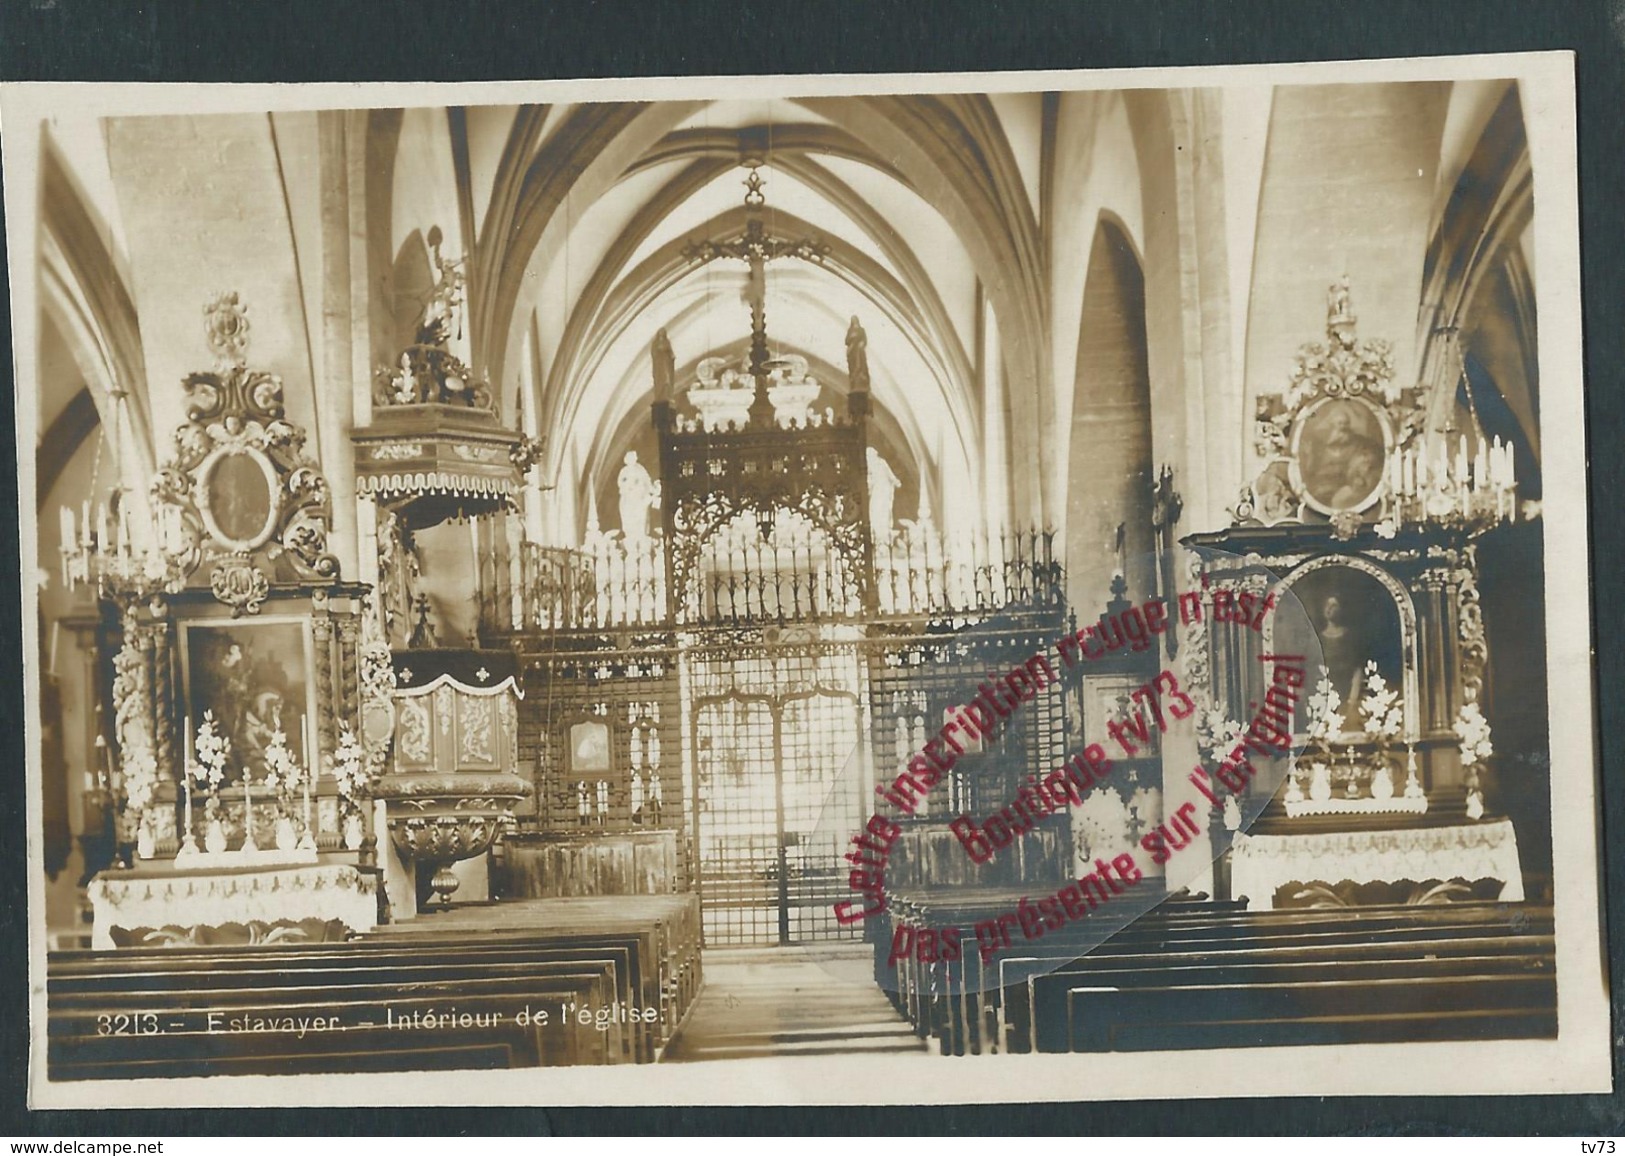 NN386 - Carte Photo ESTAVAYER - Intérieur De L'église - Suisse - Dos Blanc - Estavayer